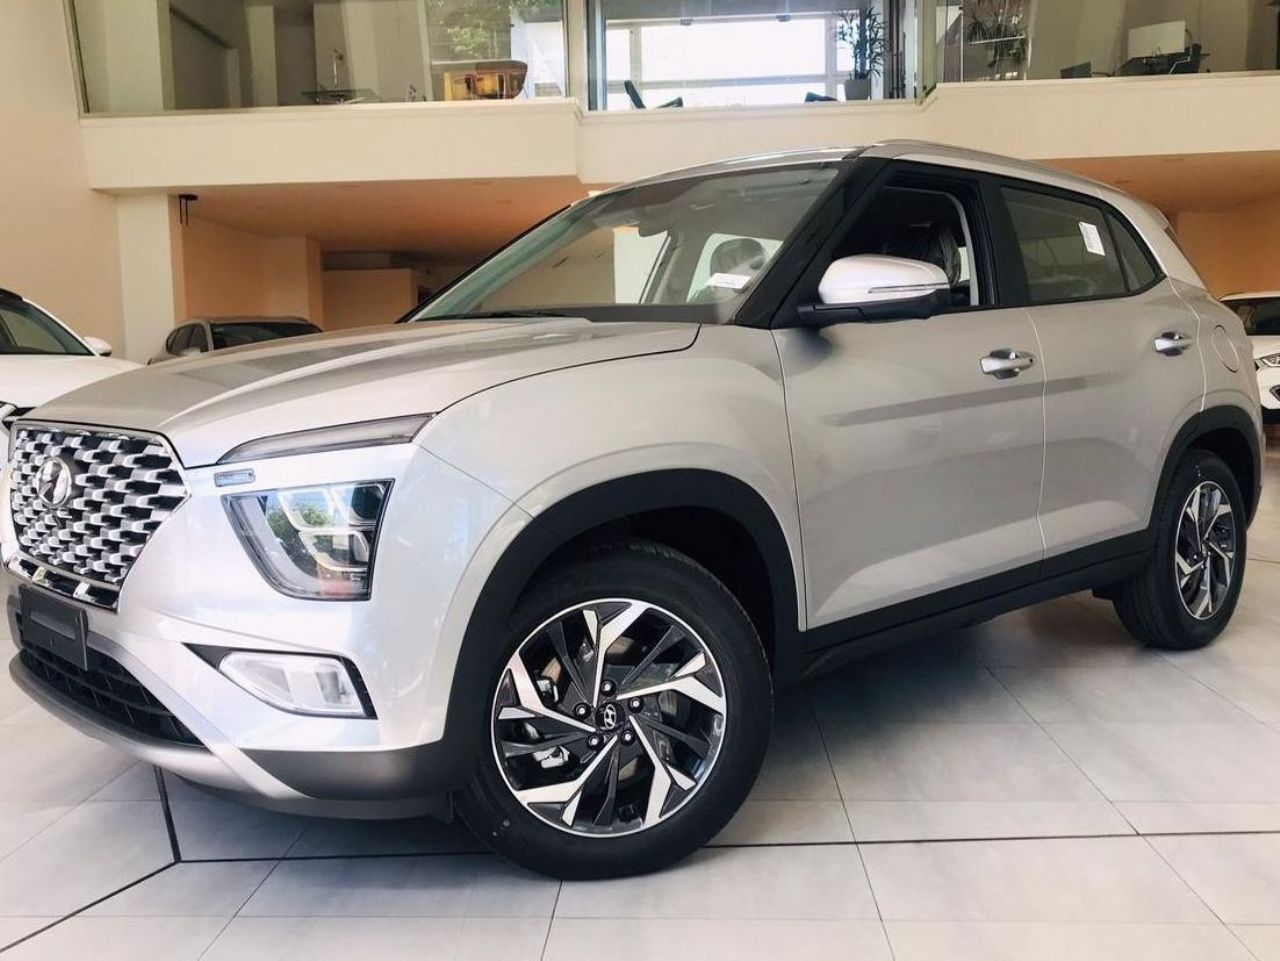 Hyundai Creta Nuevo en Mendoza, deRuedas